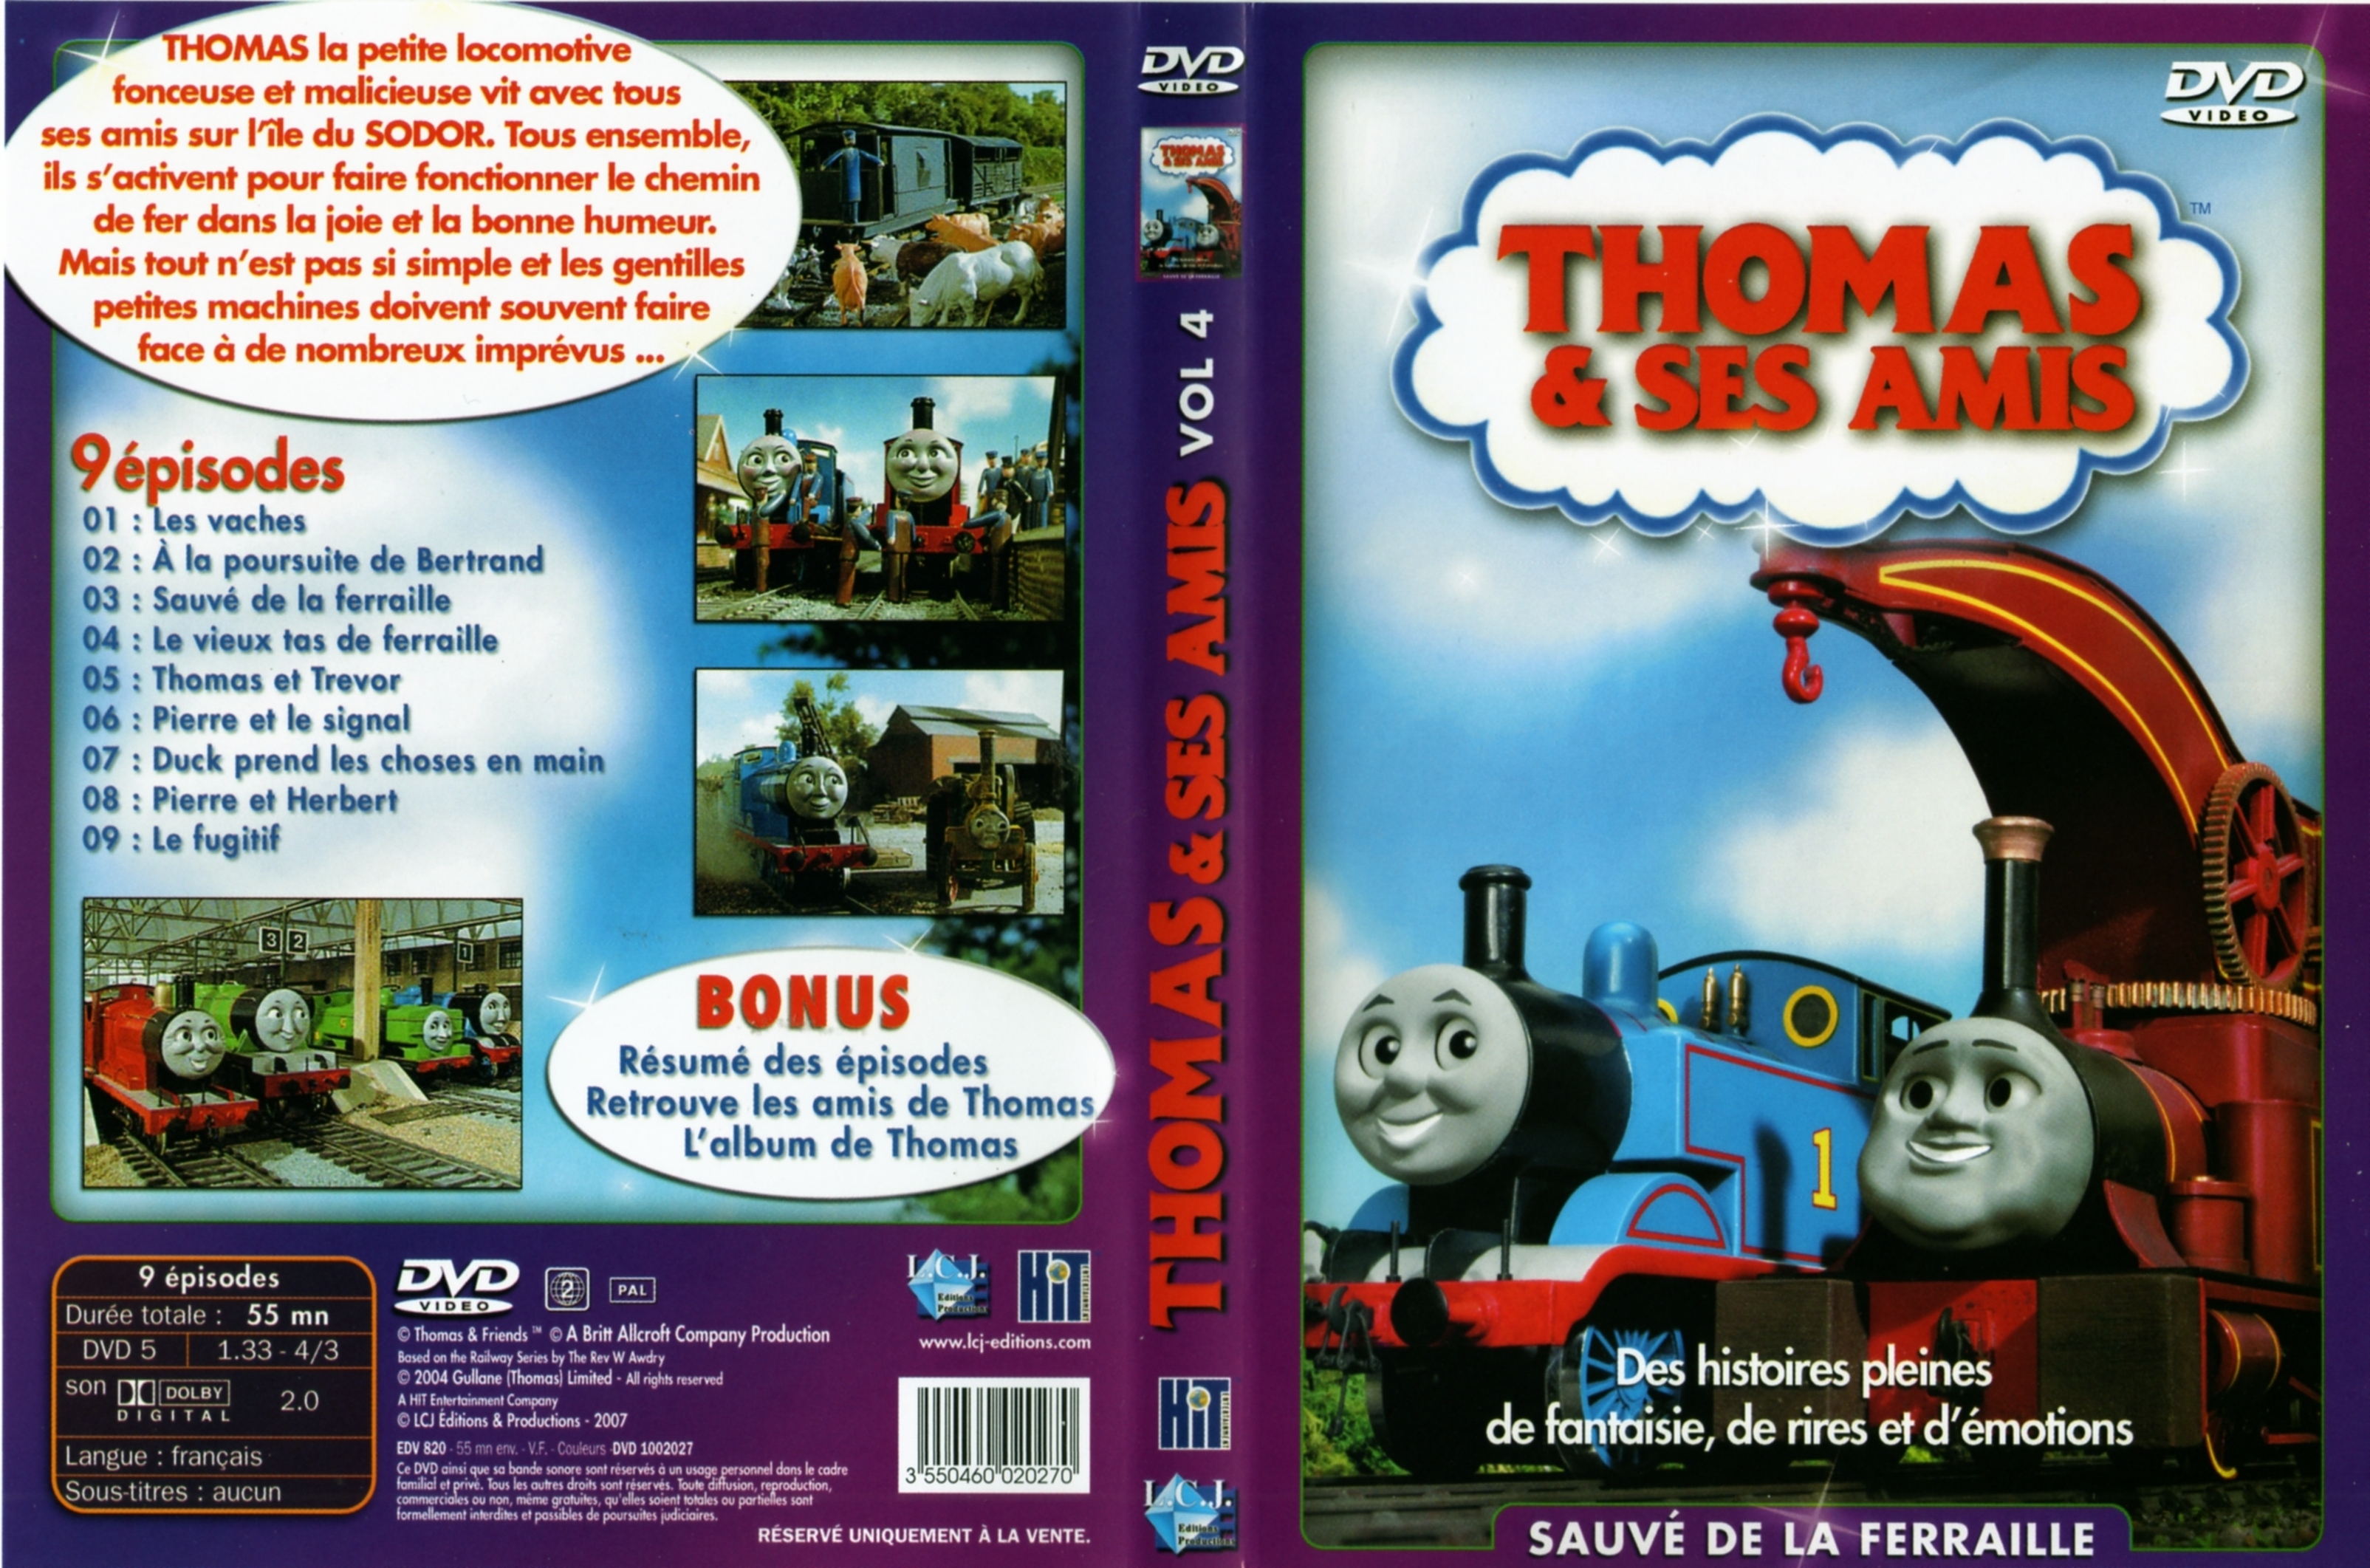 Jaquette DVD Thomas et ses amis vol 04